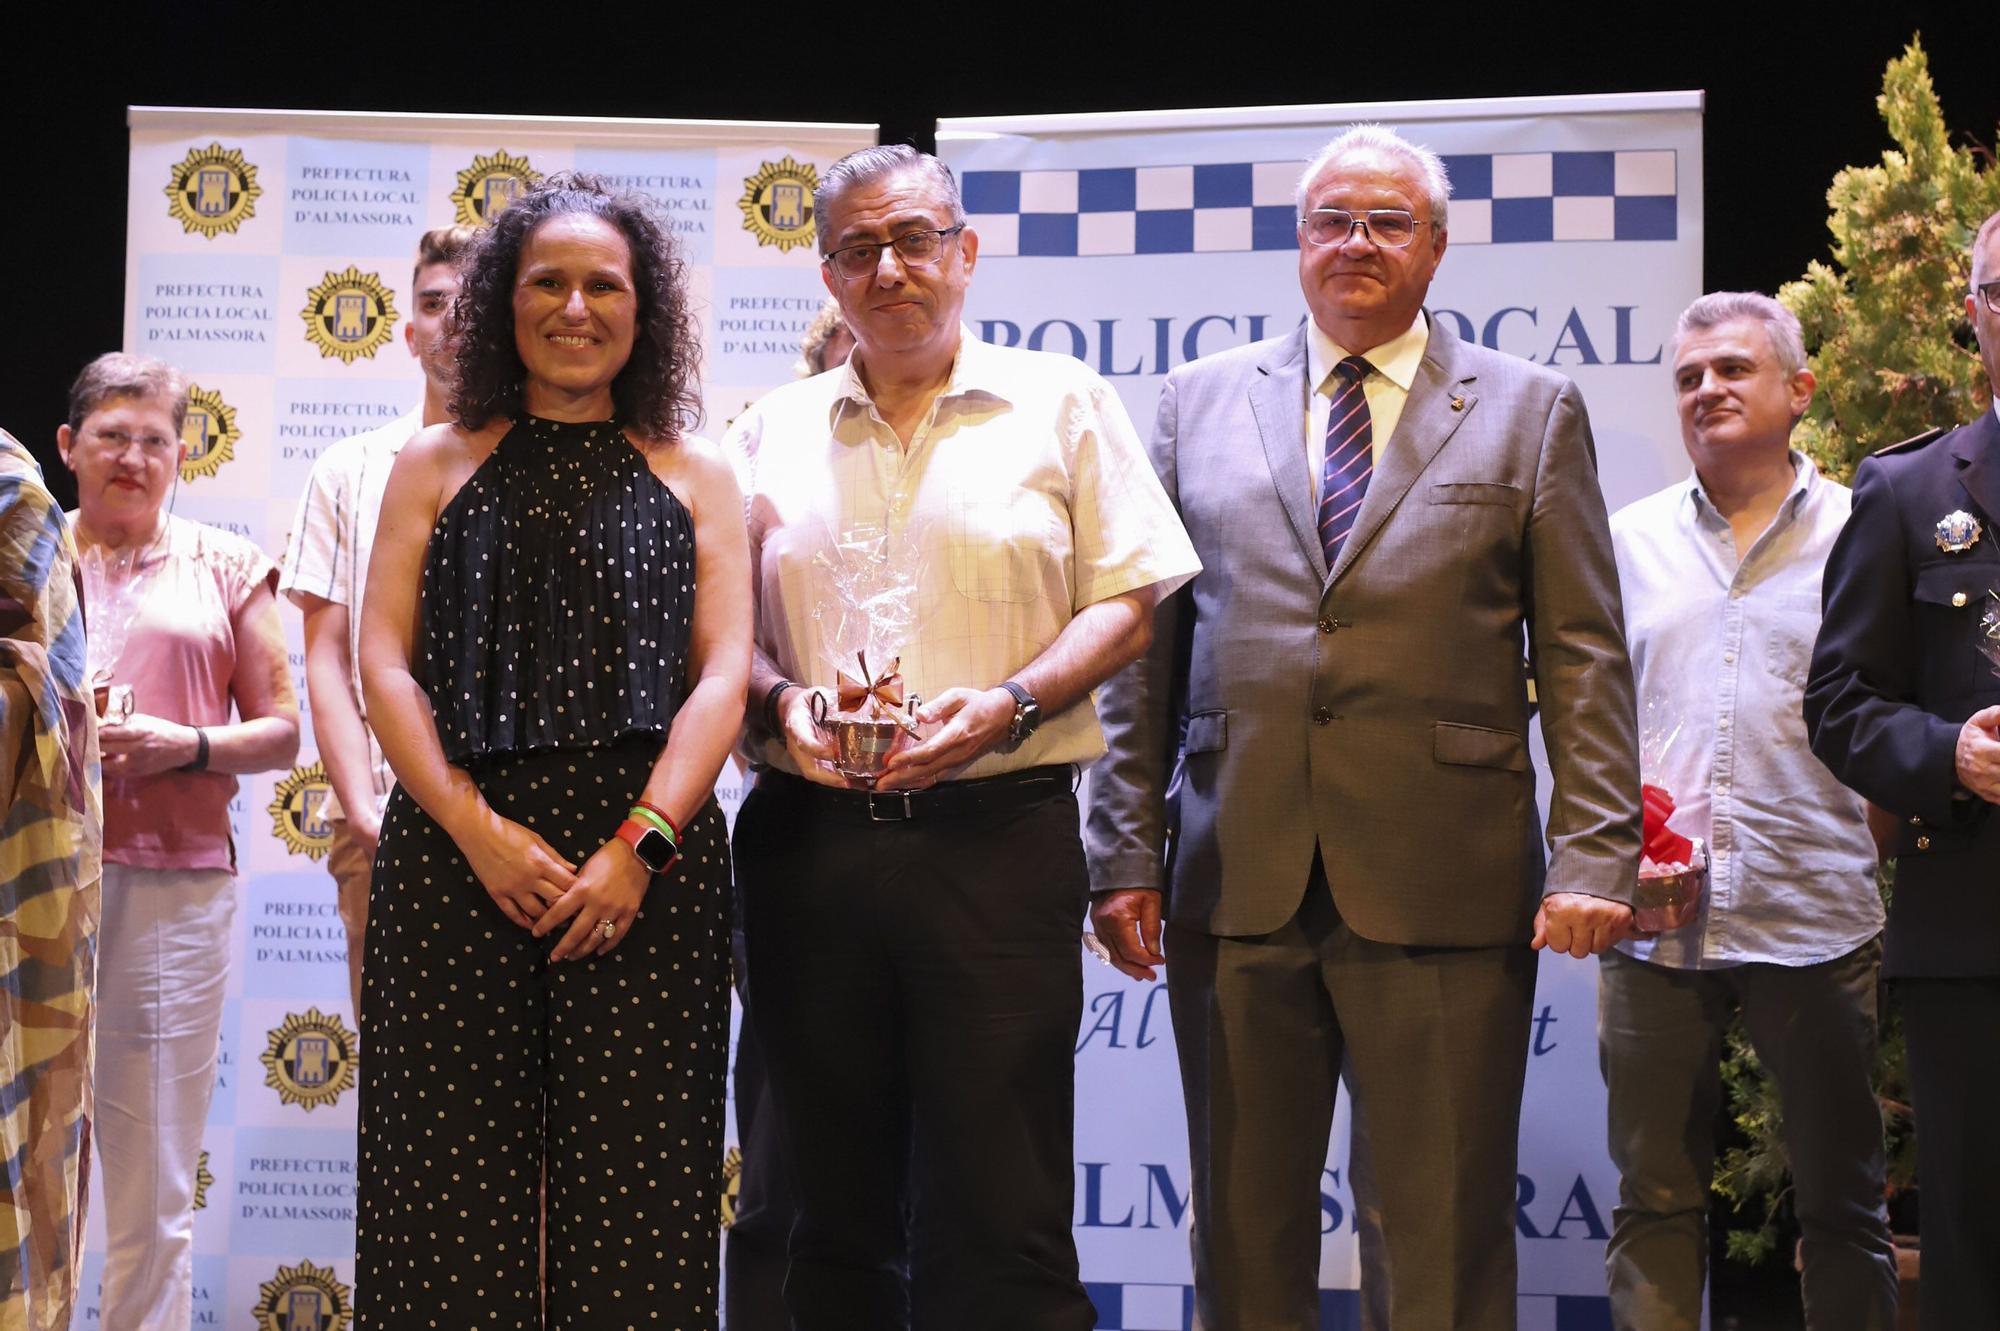 Las fotos de los premiados por la Policía Local de Almassora en su festividad